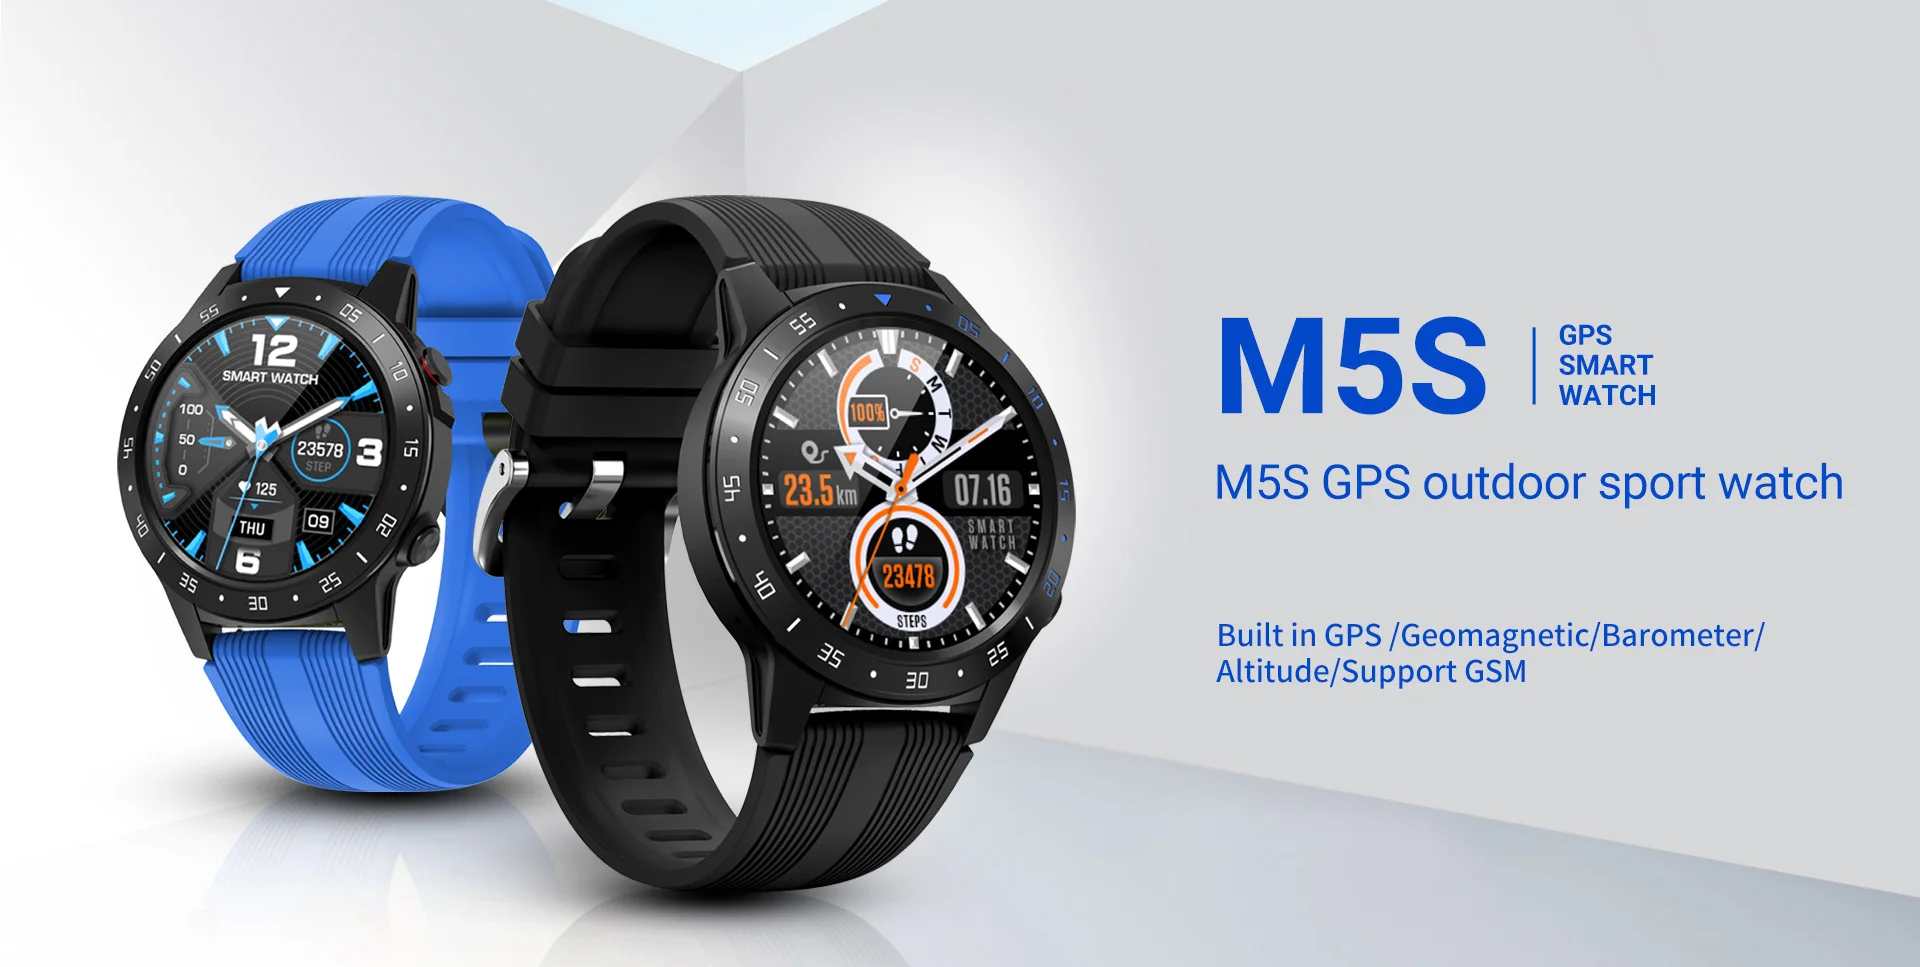 LEMFO M5S спортивные мужские умные часы с поддержкой 2G sim-карты 1,3 дюймов полный круглый Сенсорный экран для сердечного ритма IP67 Водонепроницаемый Компас погода